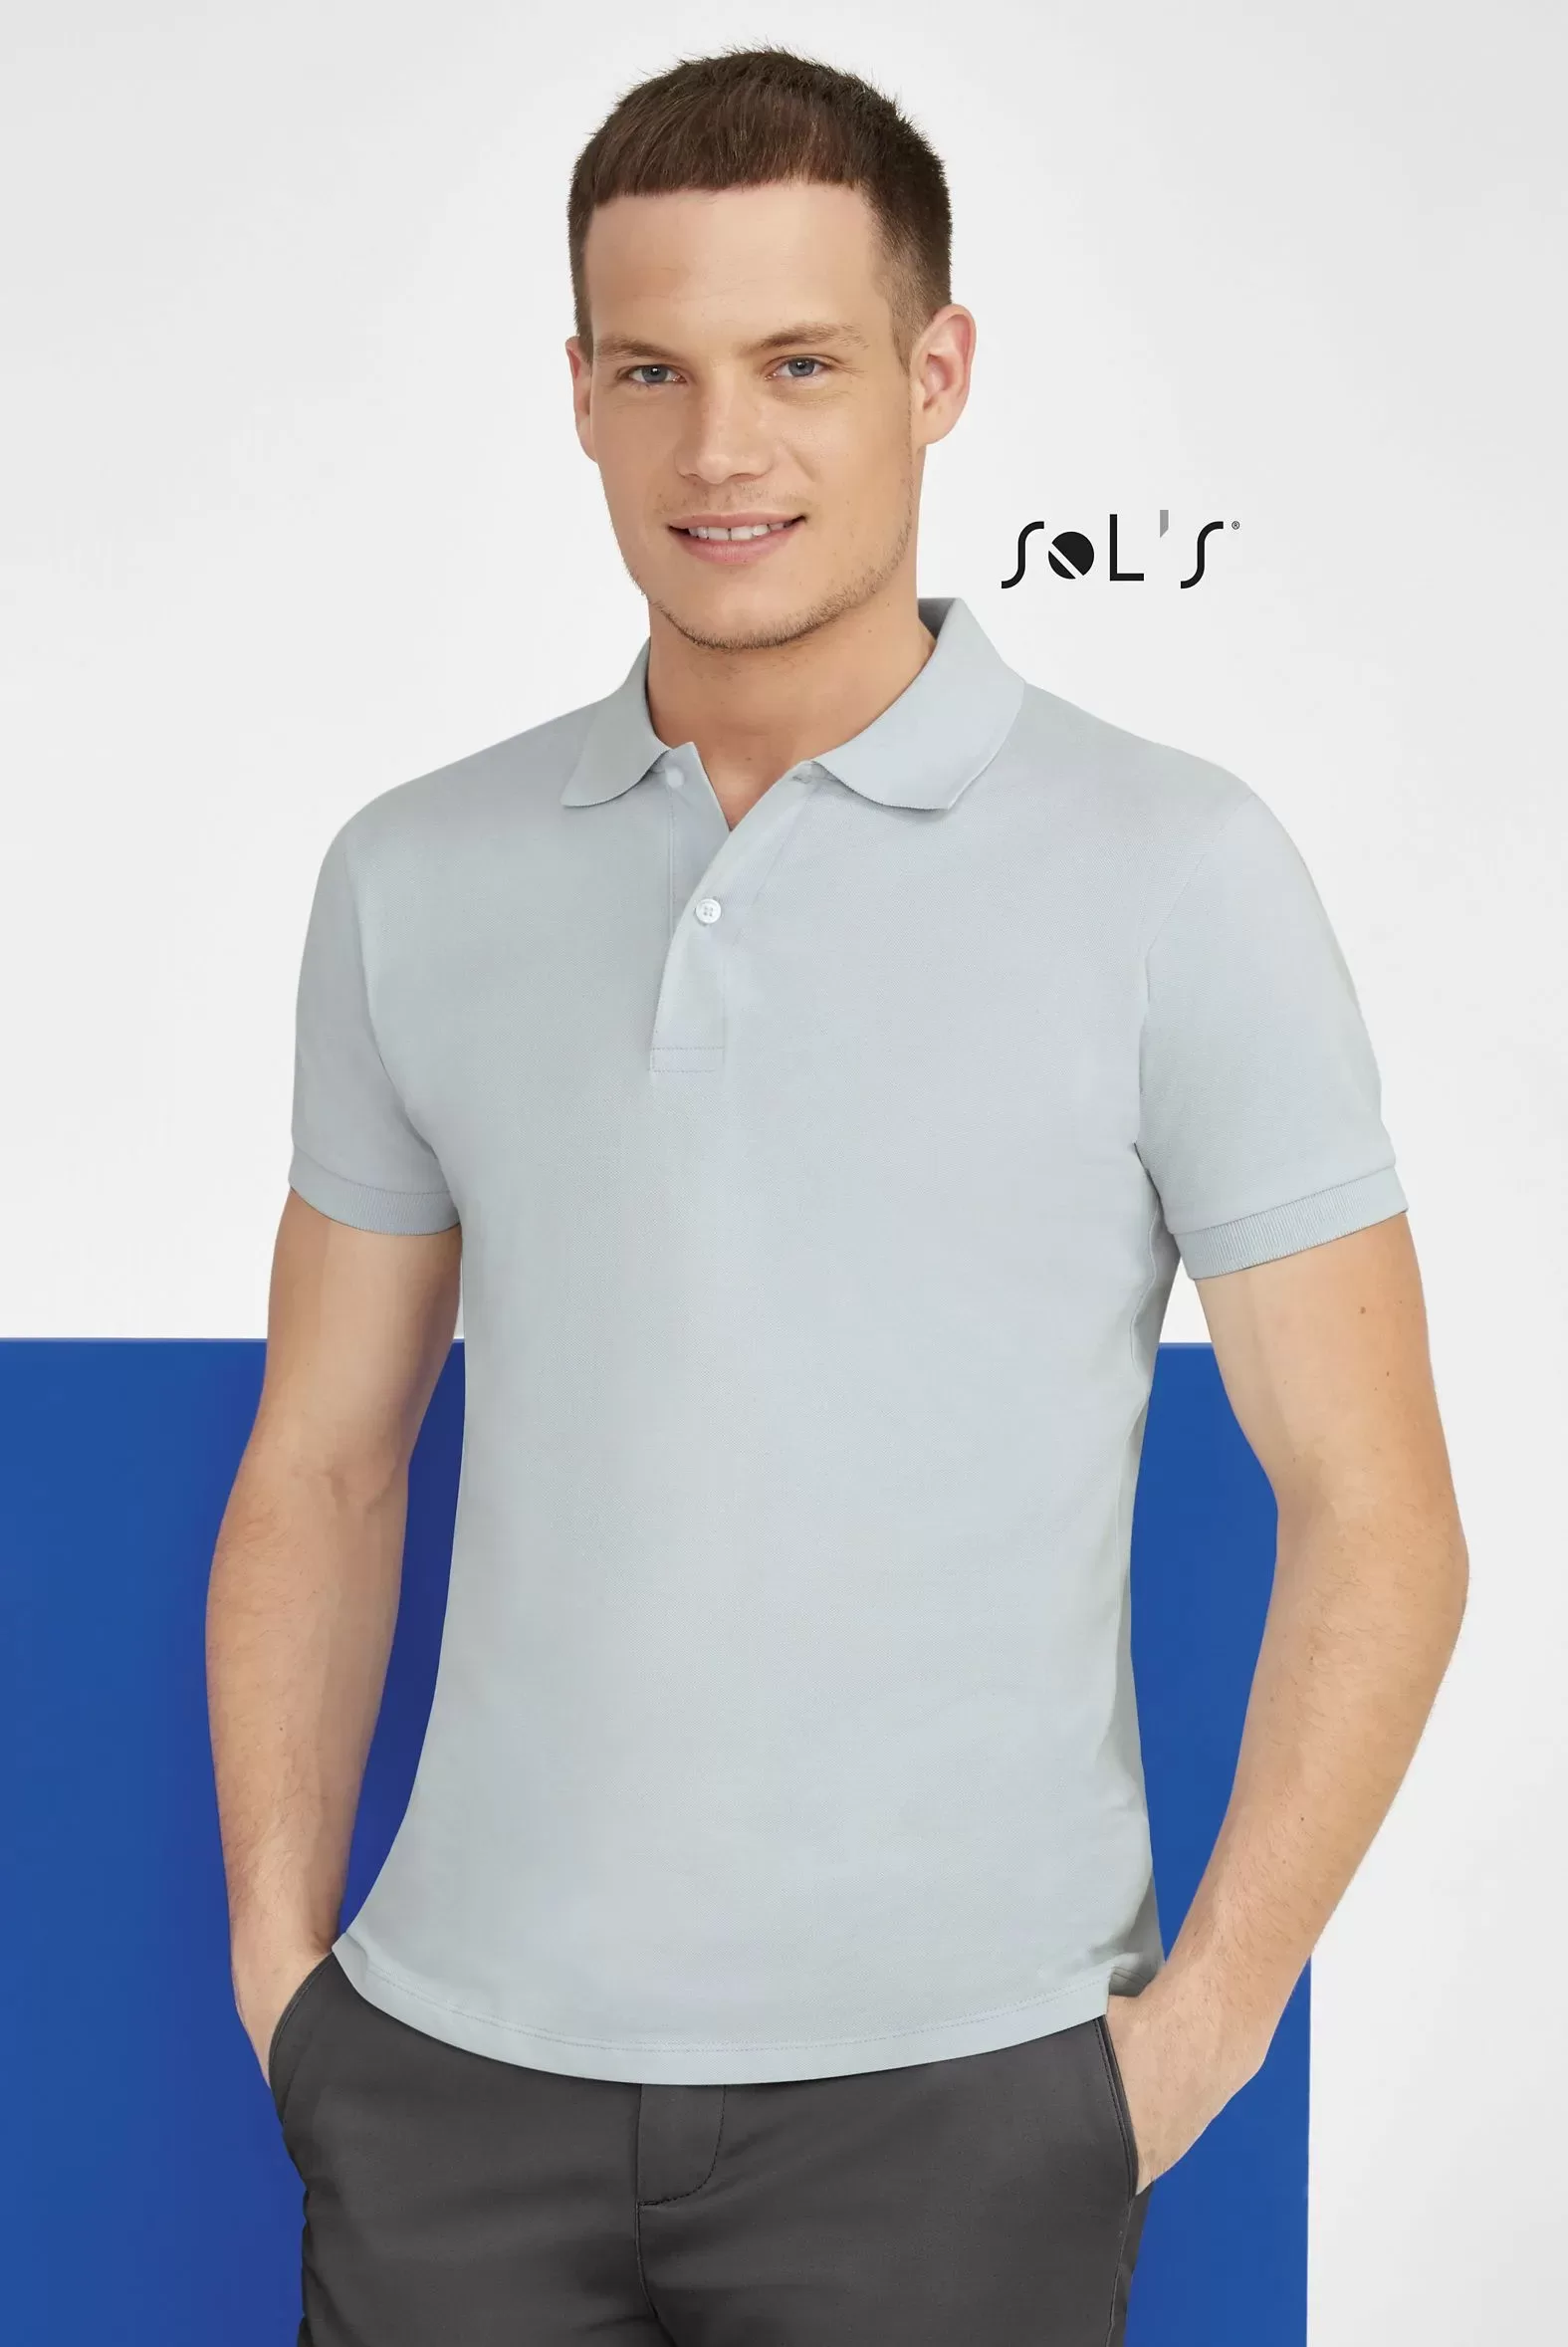 Polo shirt men's short sleeve - 100% cotton pique PERFECT